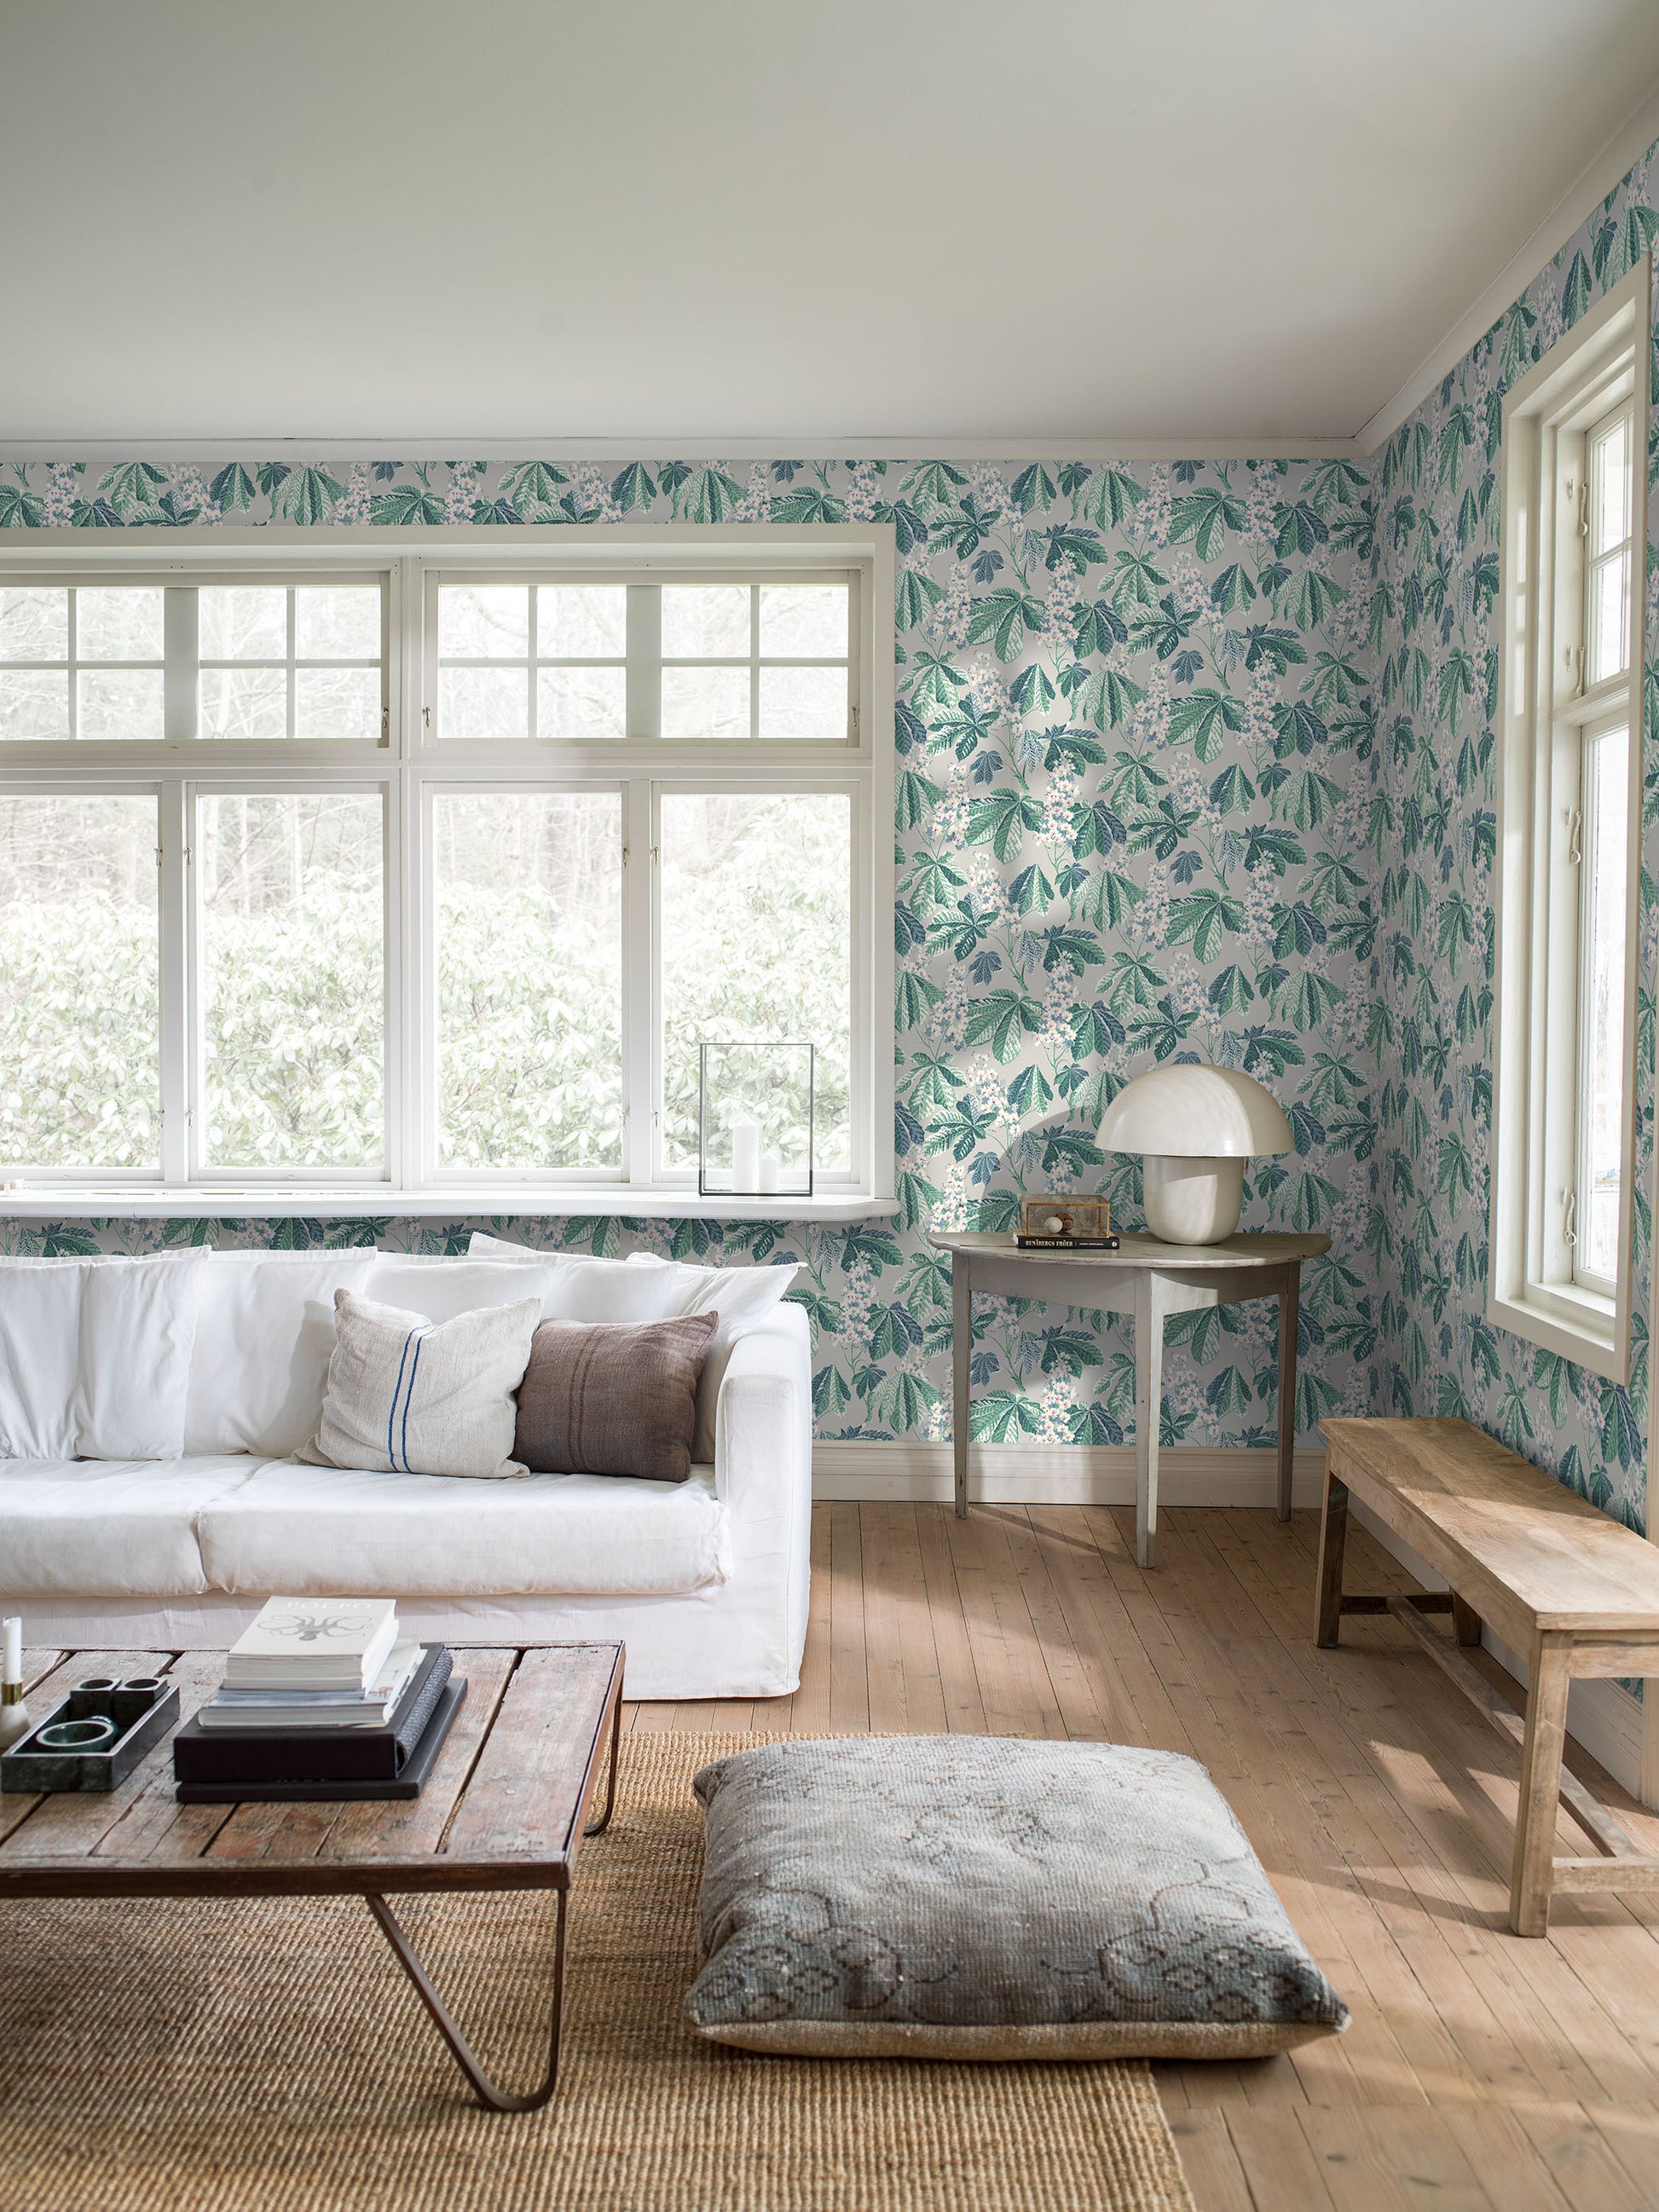 Chestnut Blossom - Grey and Green - Wallpaper Trader